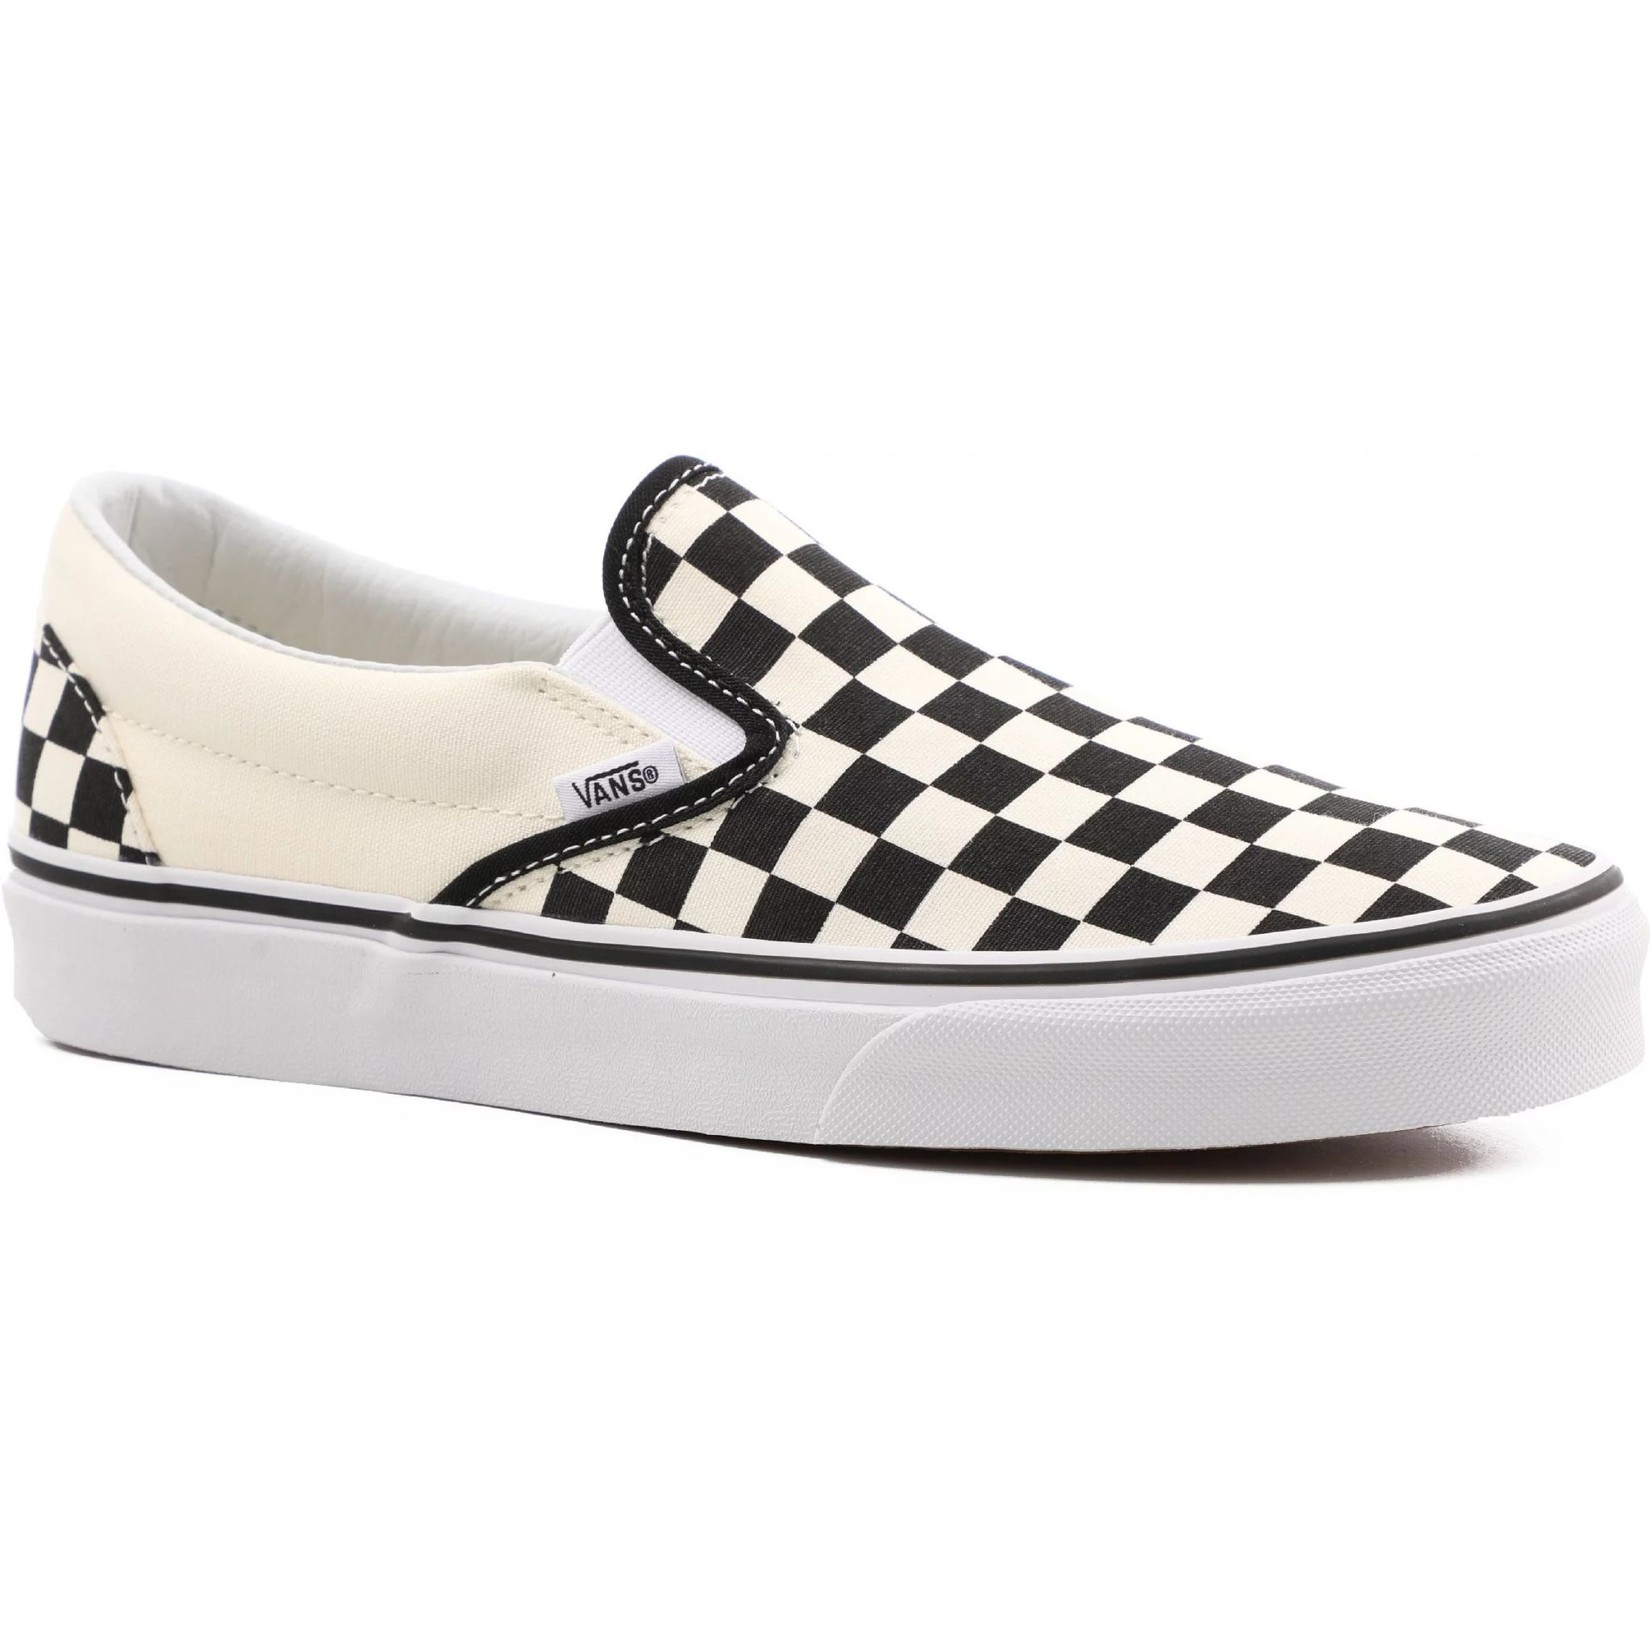 Vans Vans Classic Slip-On Youth Skate Shoes - Checker/Black/True White -